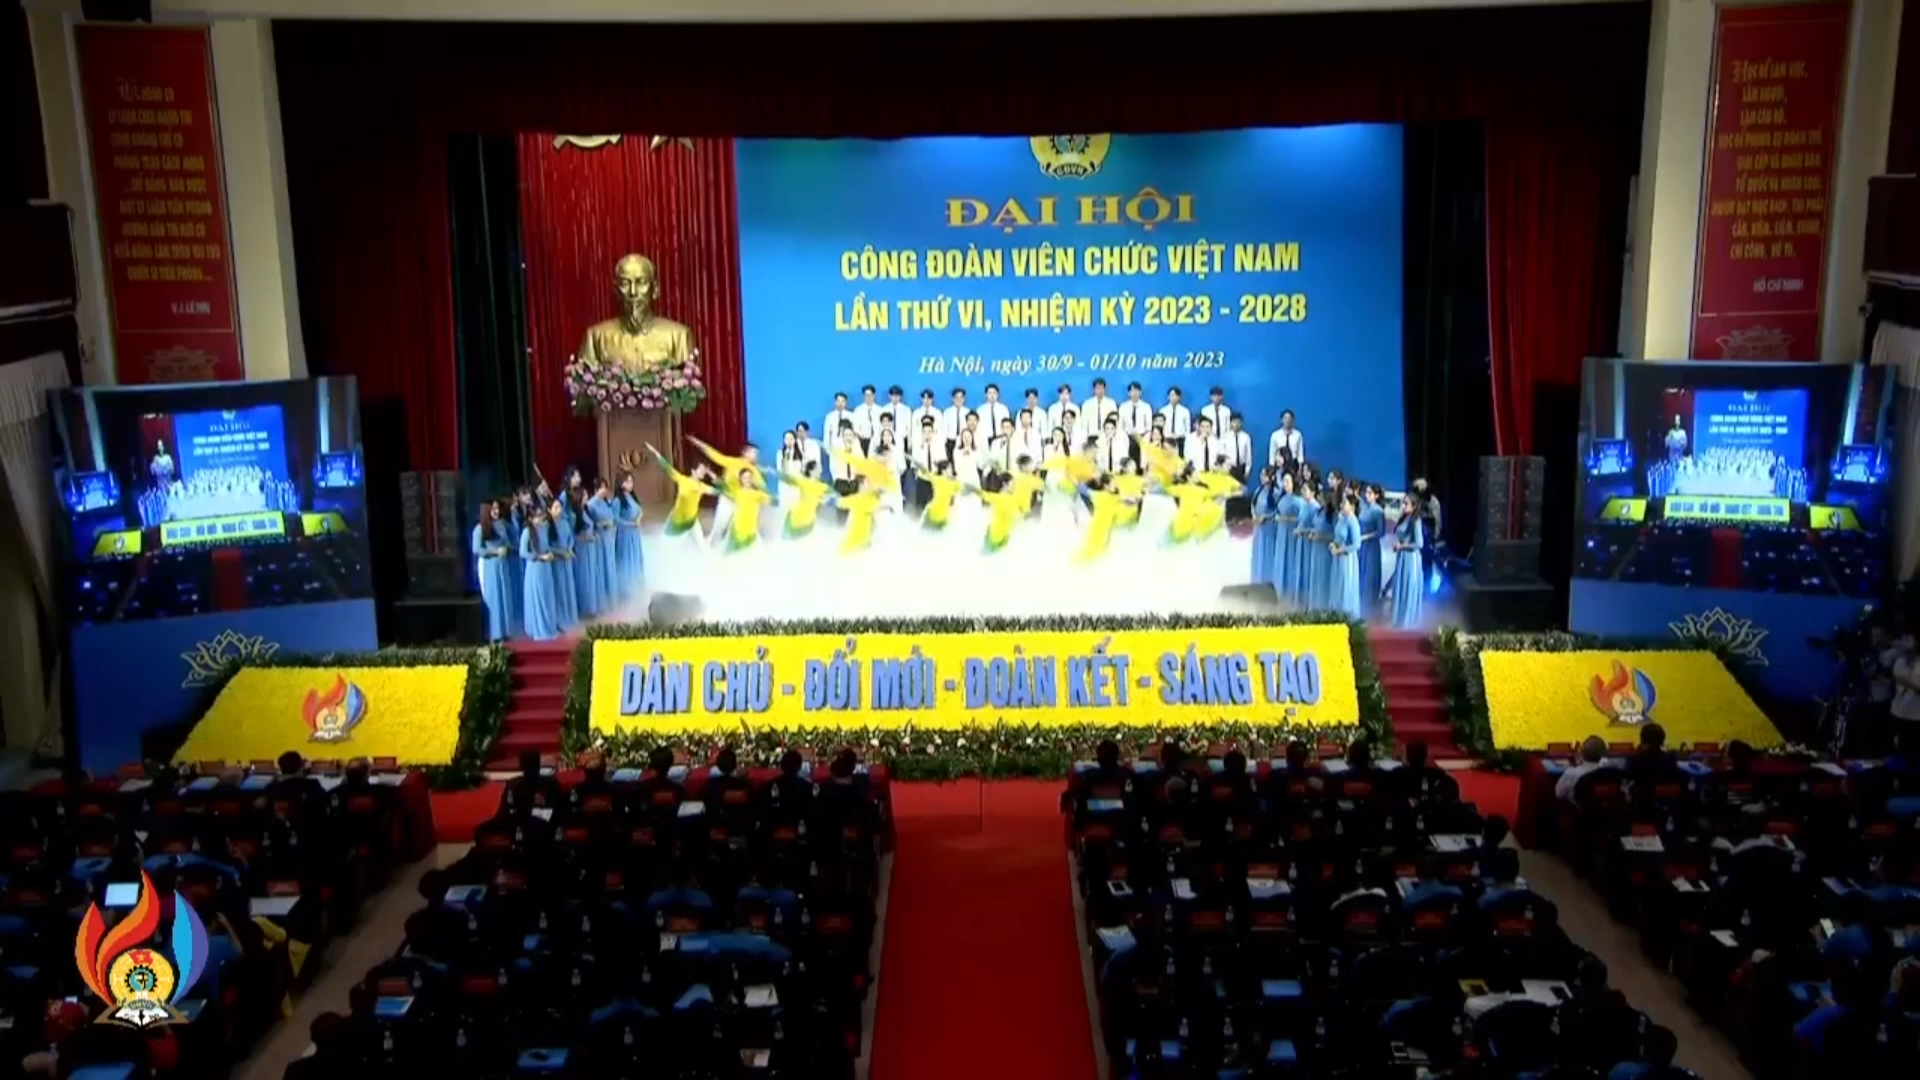 Video: Chương trình nghệ thuật đặc biệt tại Đại hội Công đoàn Viên chức Việt Nam lần thứ VI, nhiệm kỳ 2023 - 2028